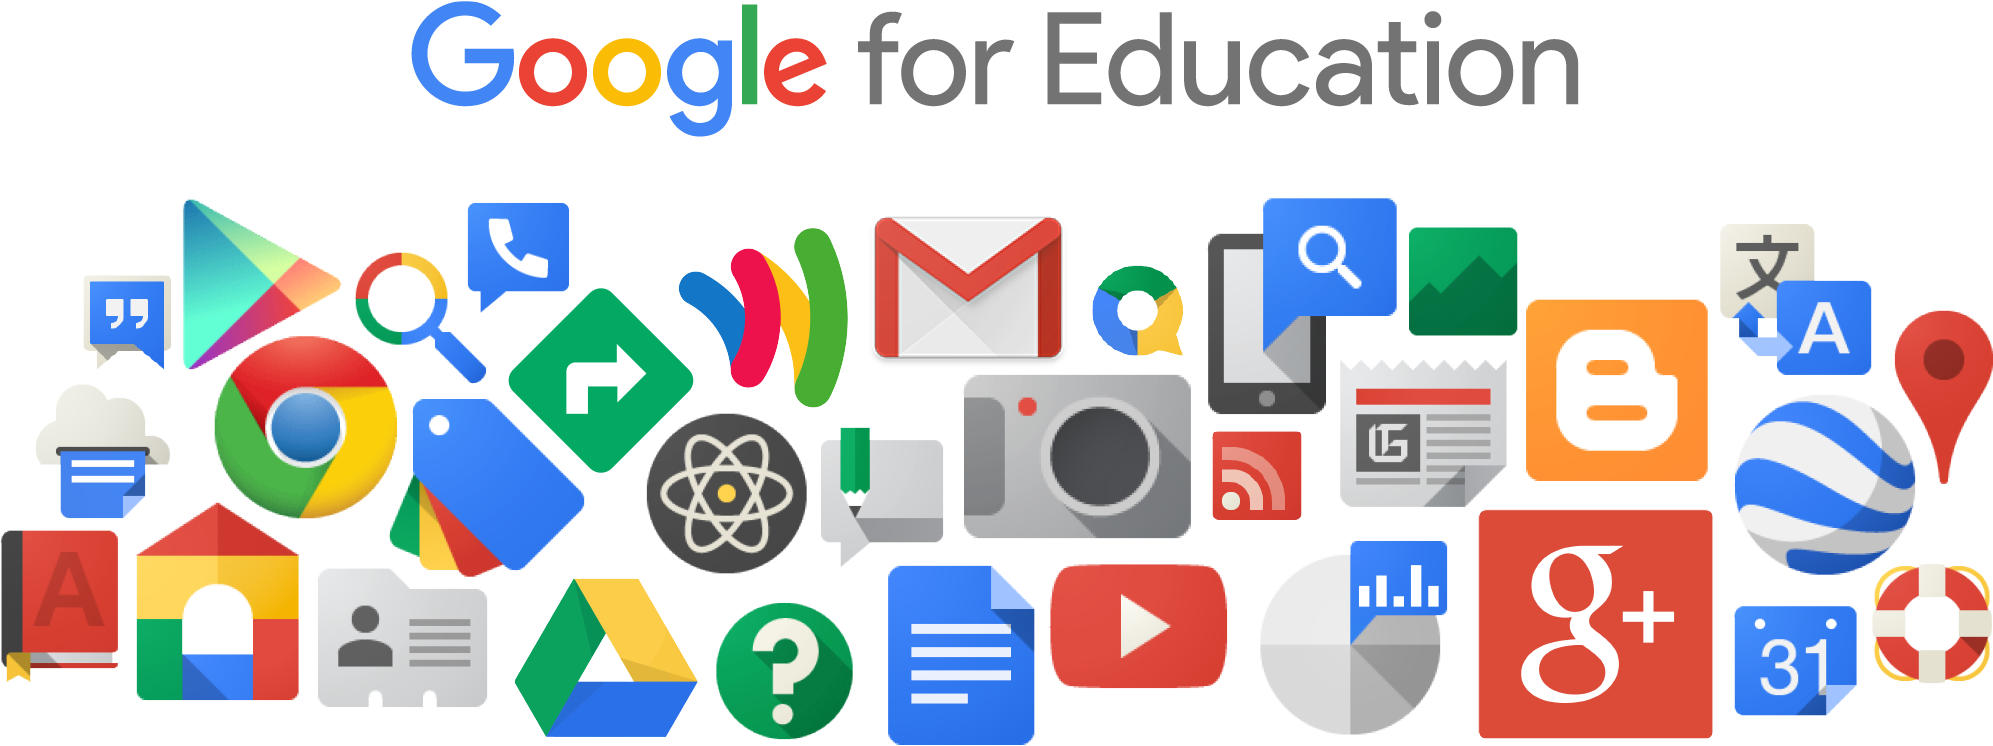 Google Apps pour Education